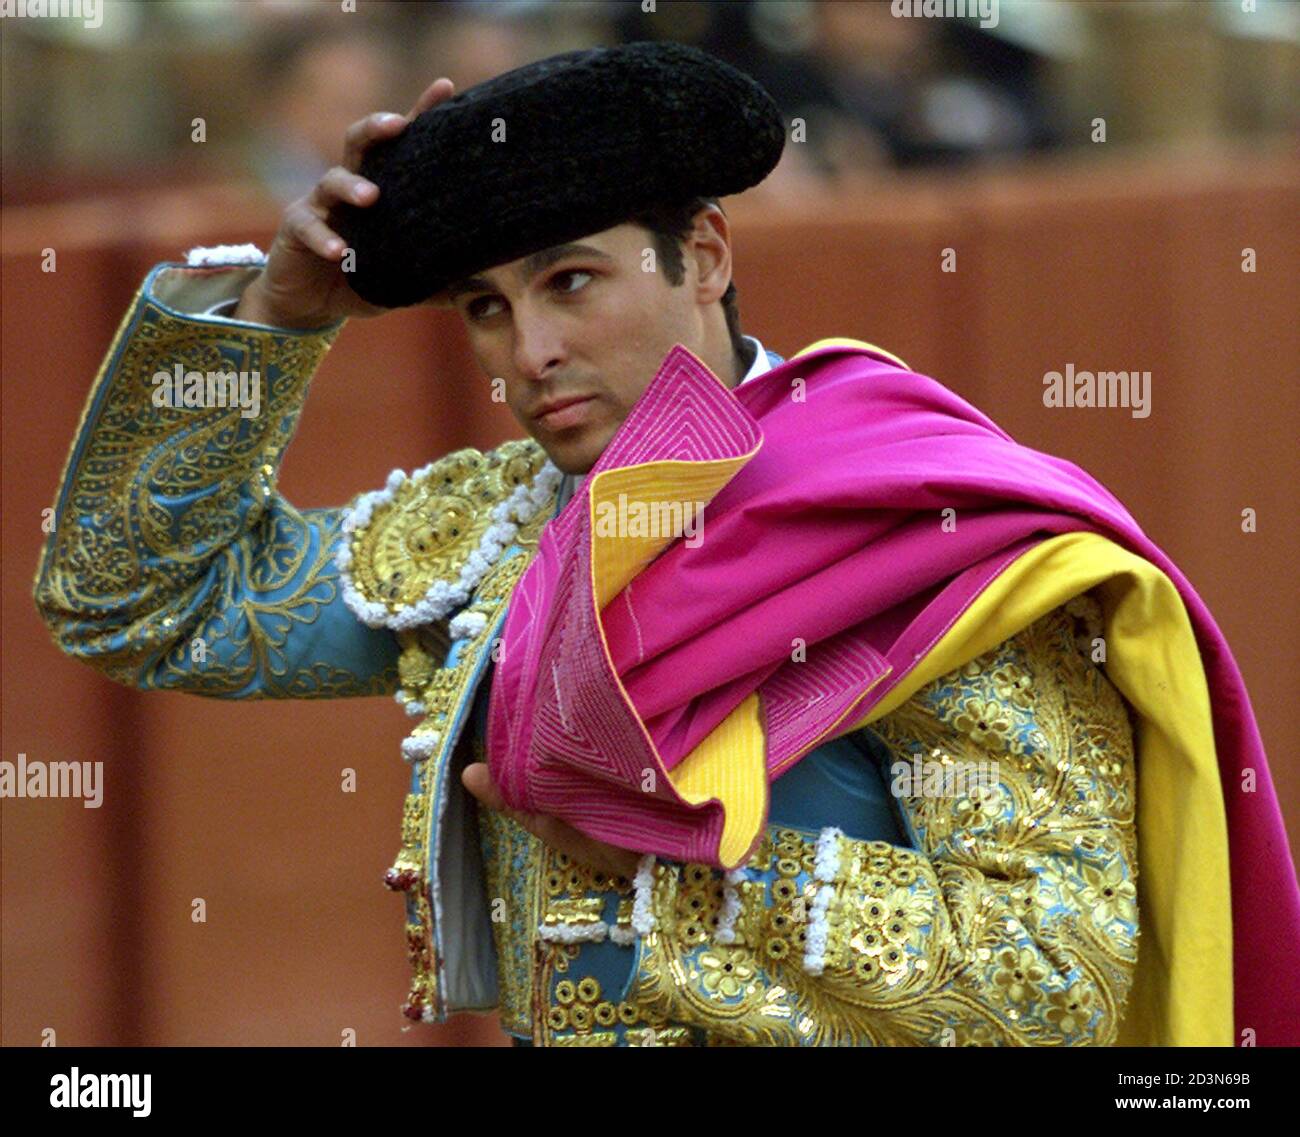 Cappello matador immagini e fotografie stock ad alta risoluzione - Alamy